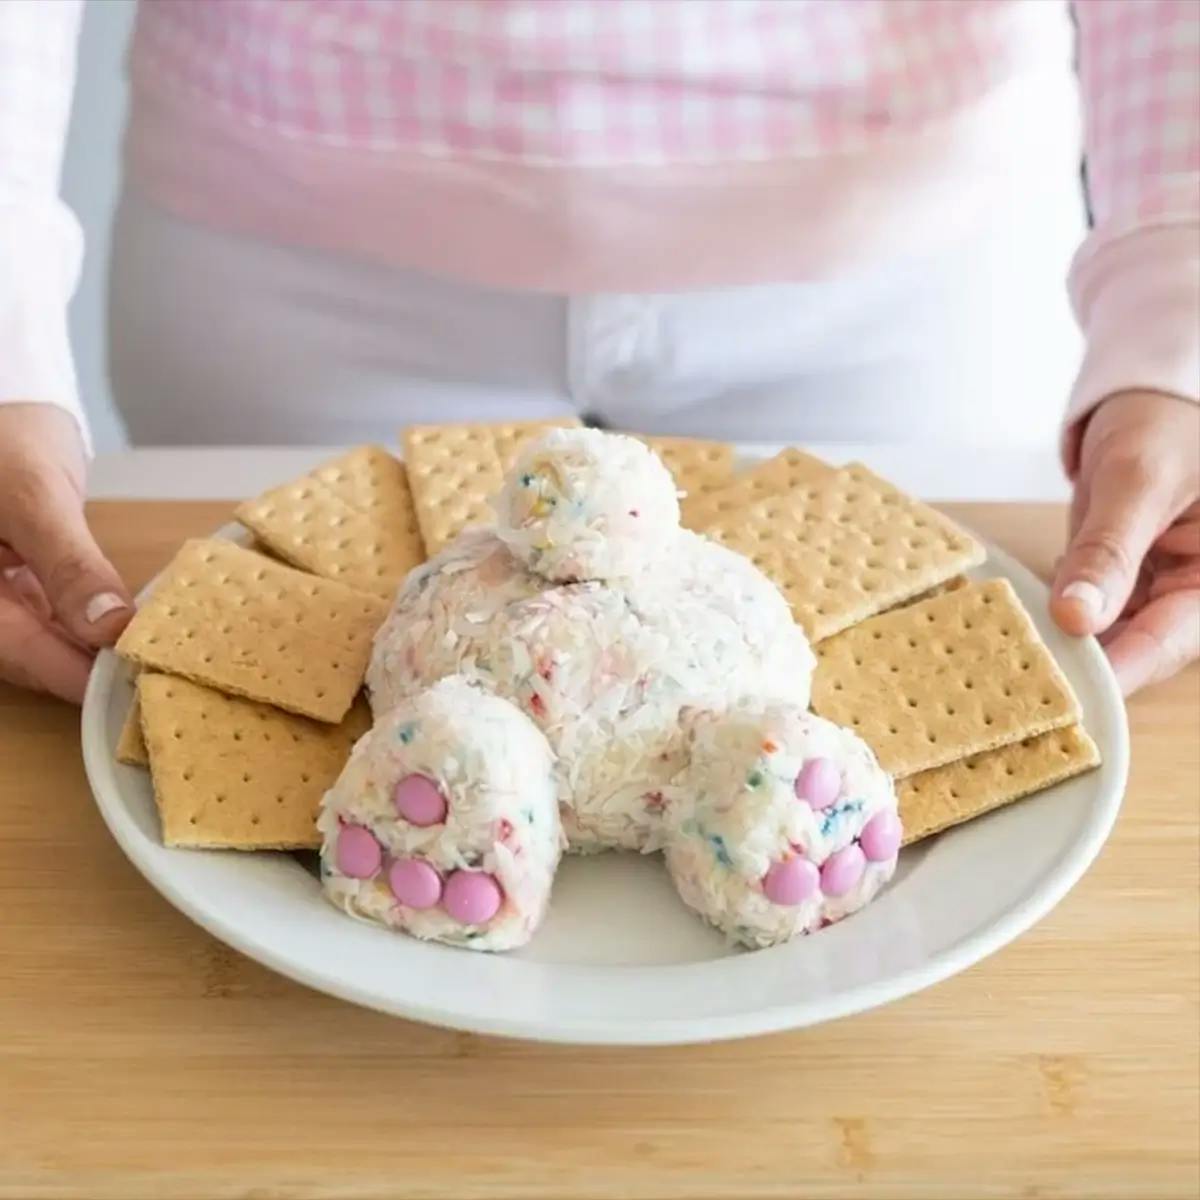 An Easter Brunch dessert in the shape of a bunny butt.